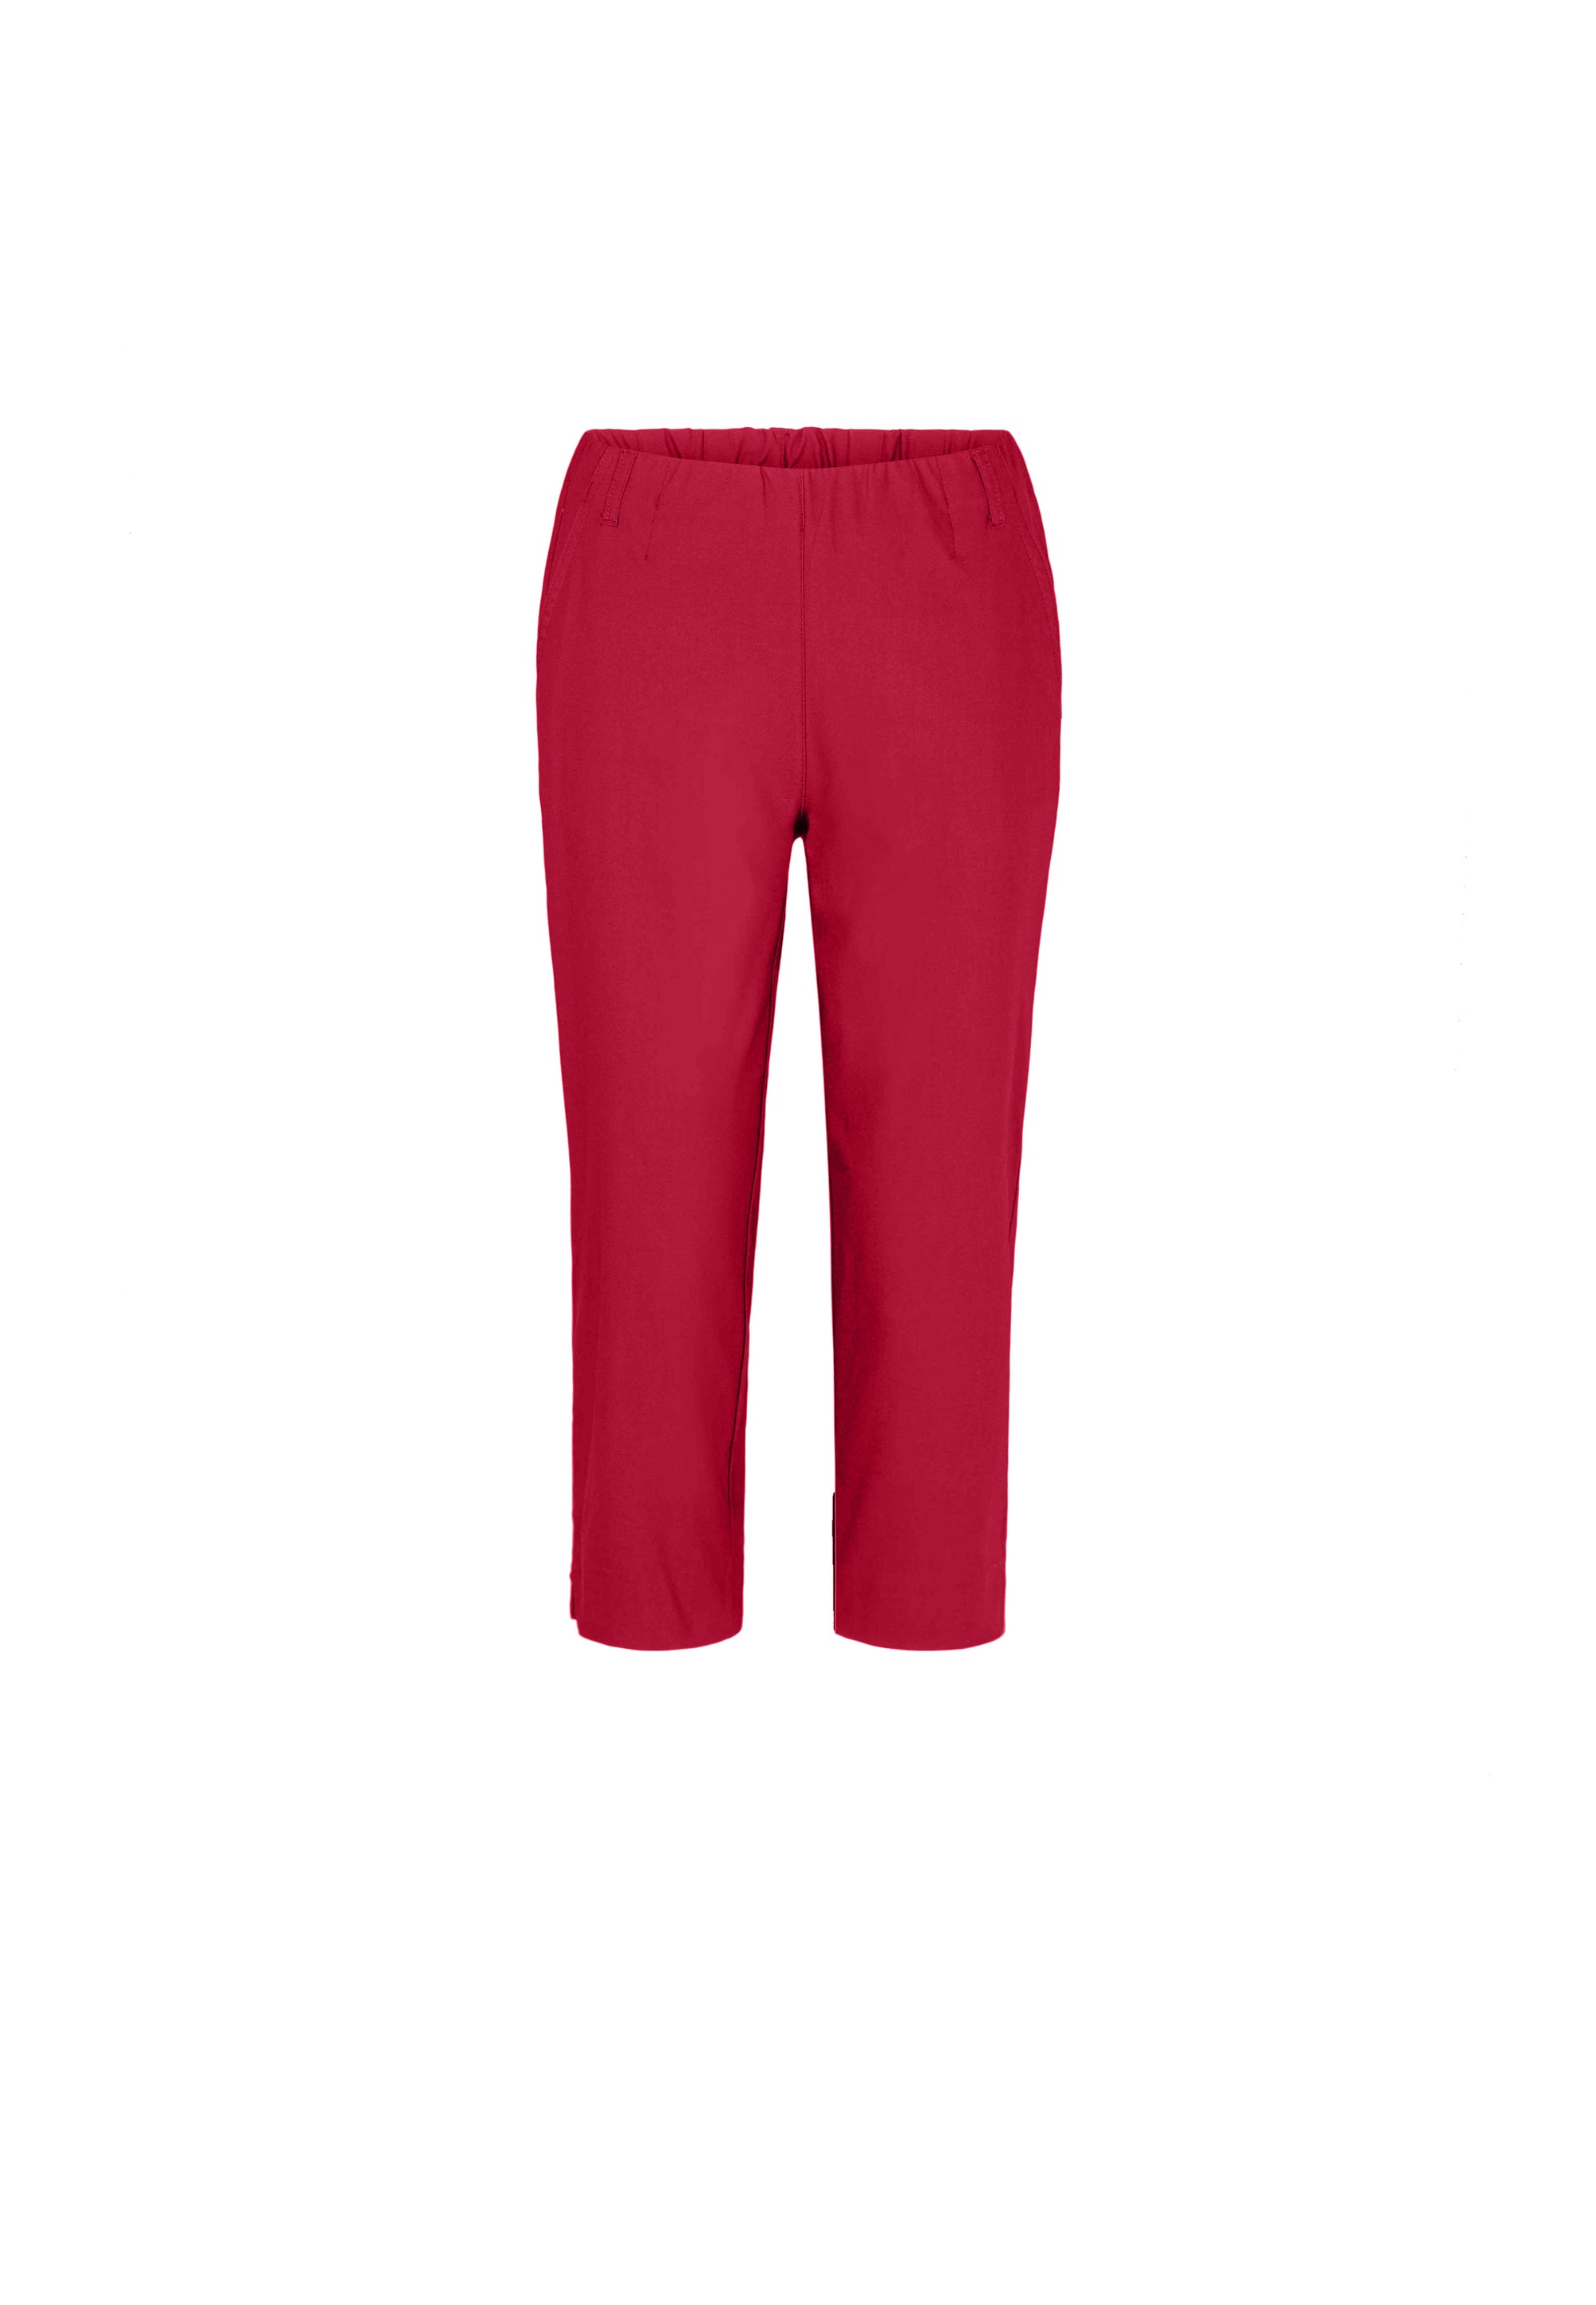 LAURIE  Taylor Regular Capri Medium Length Trousers REGULAR 60000 Red